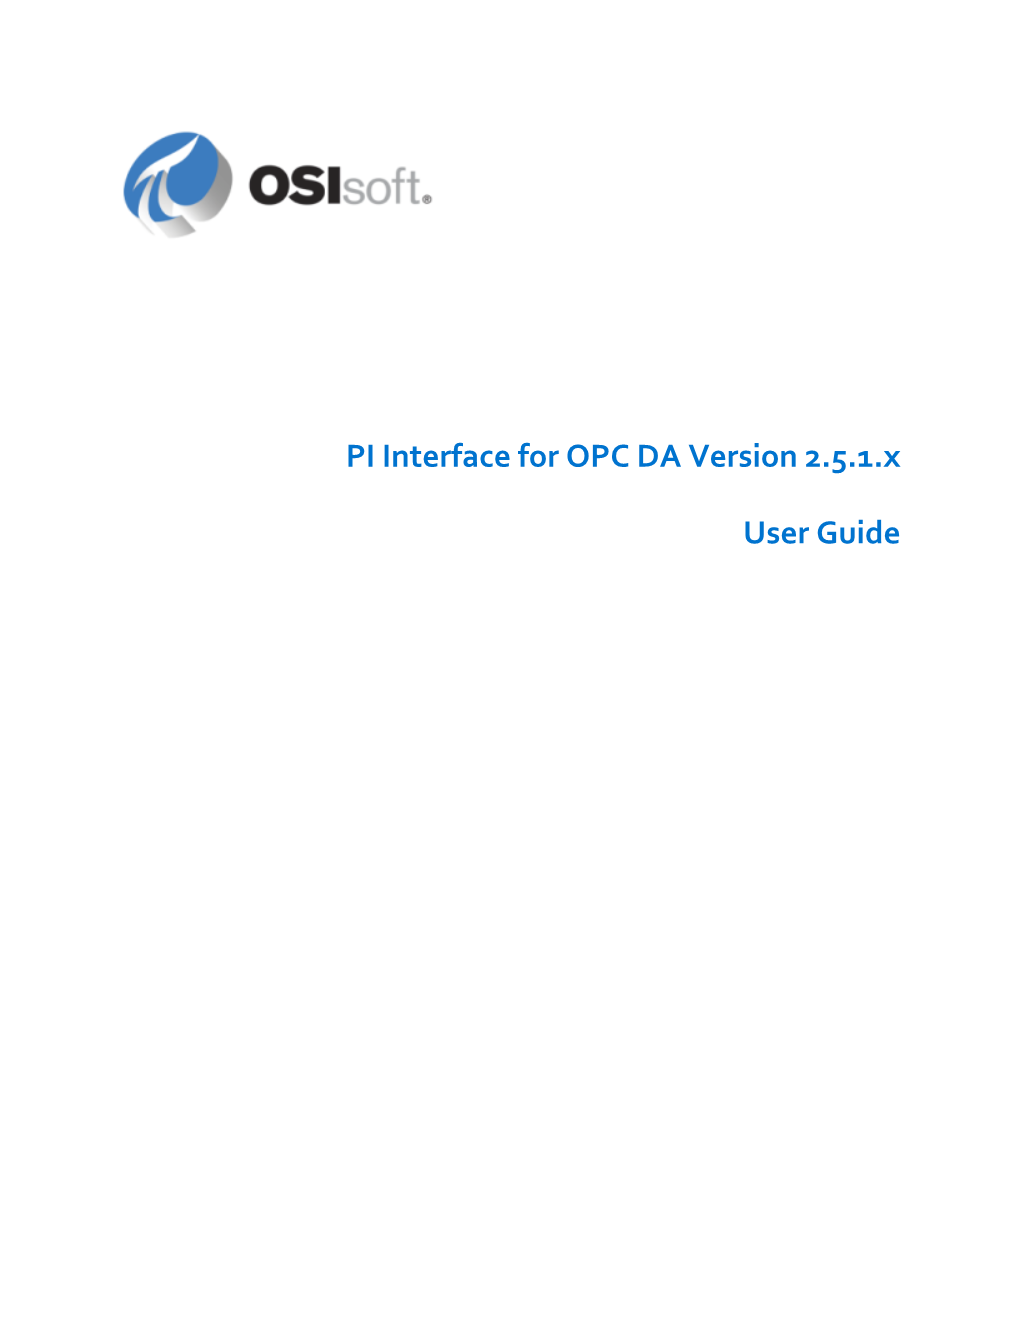 PI Interface for OPC DA Version 2.5.1.X User Guide